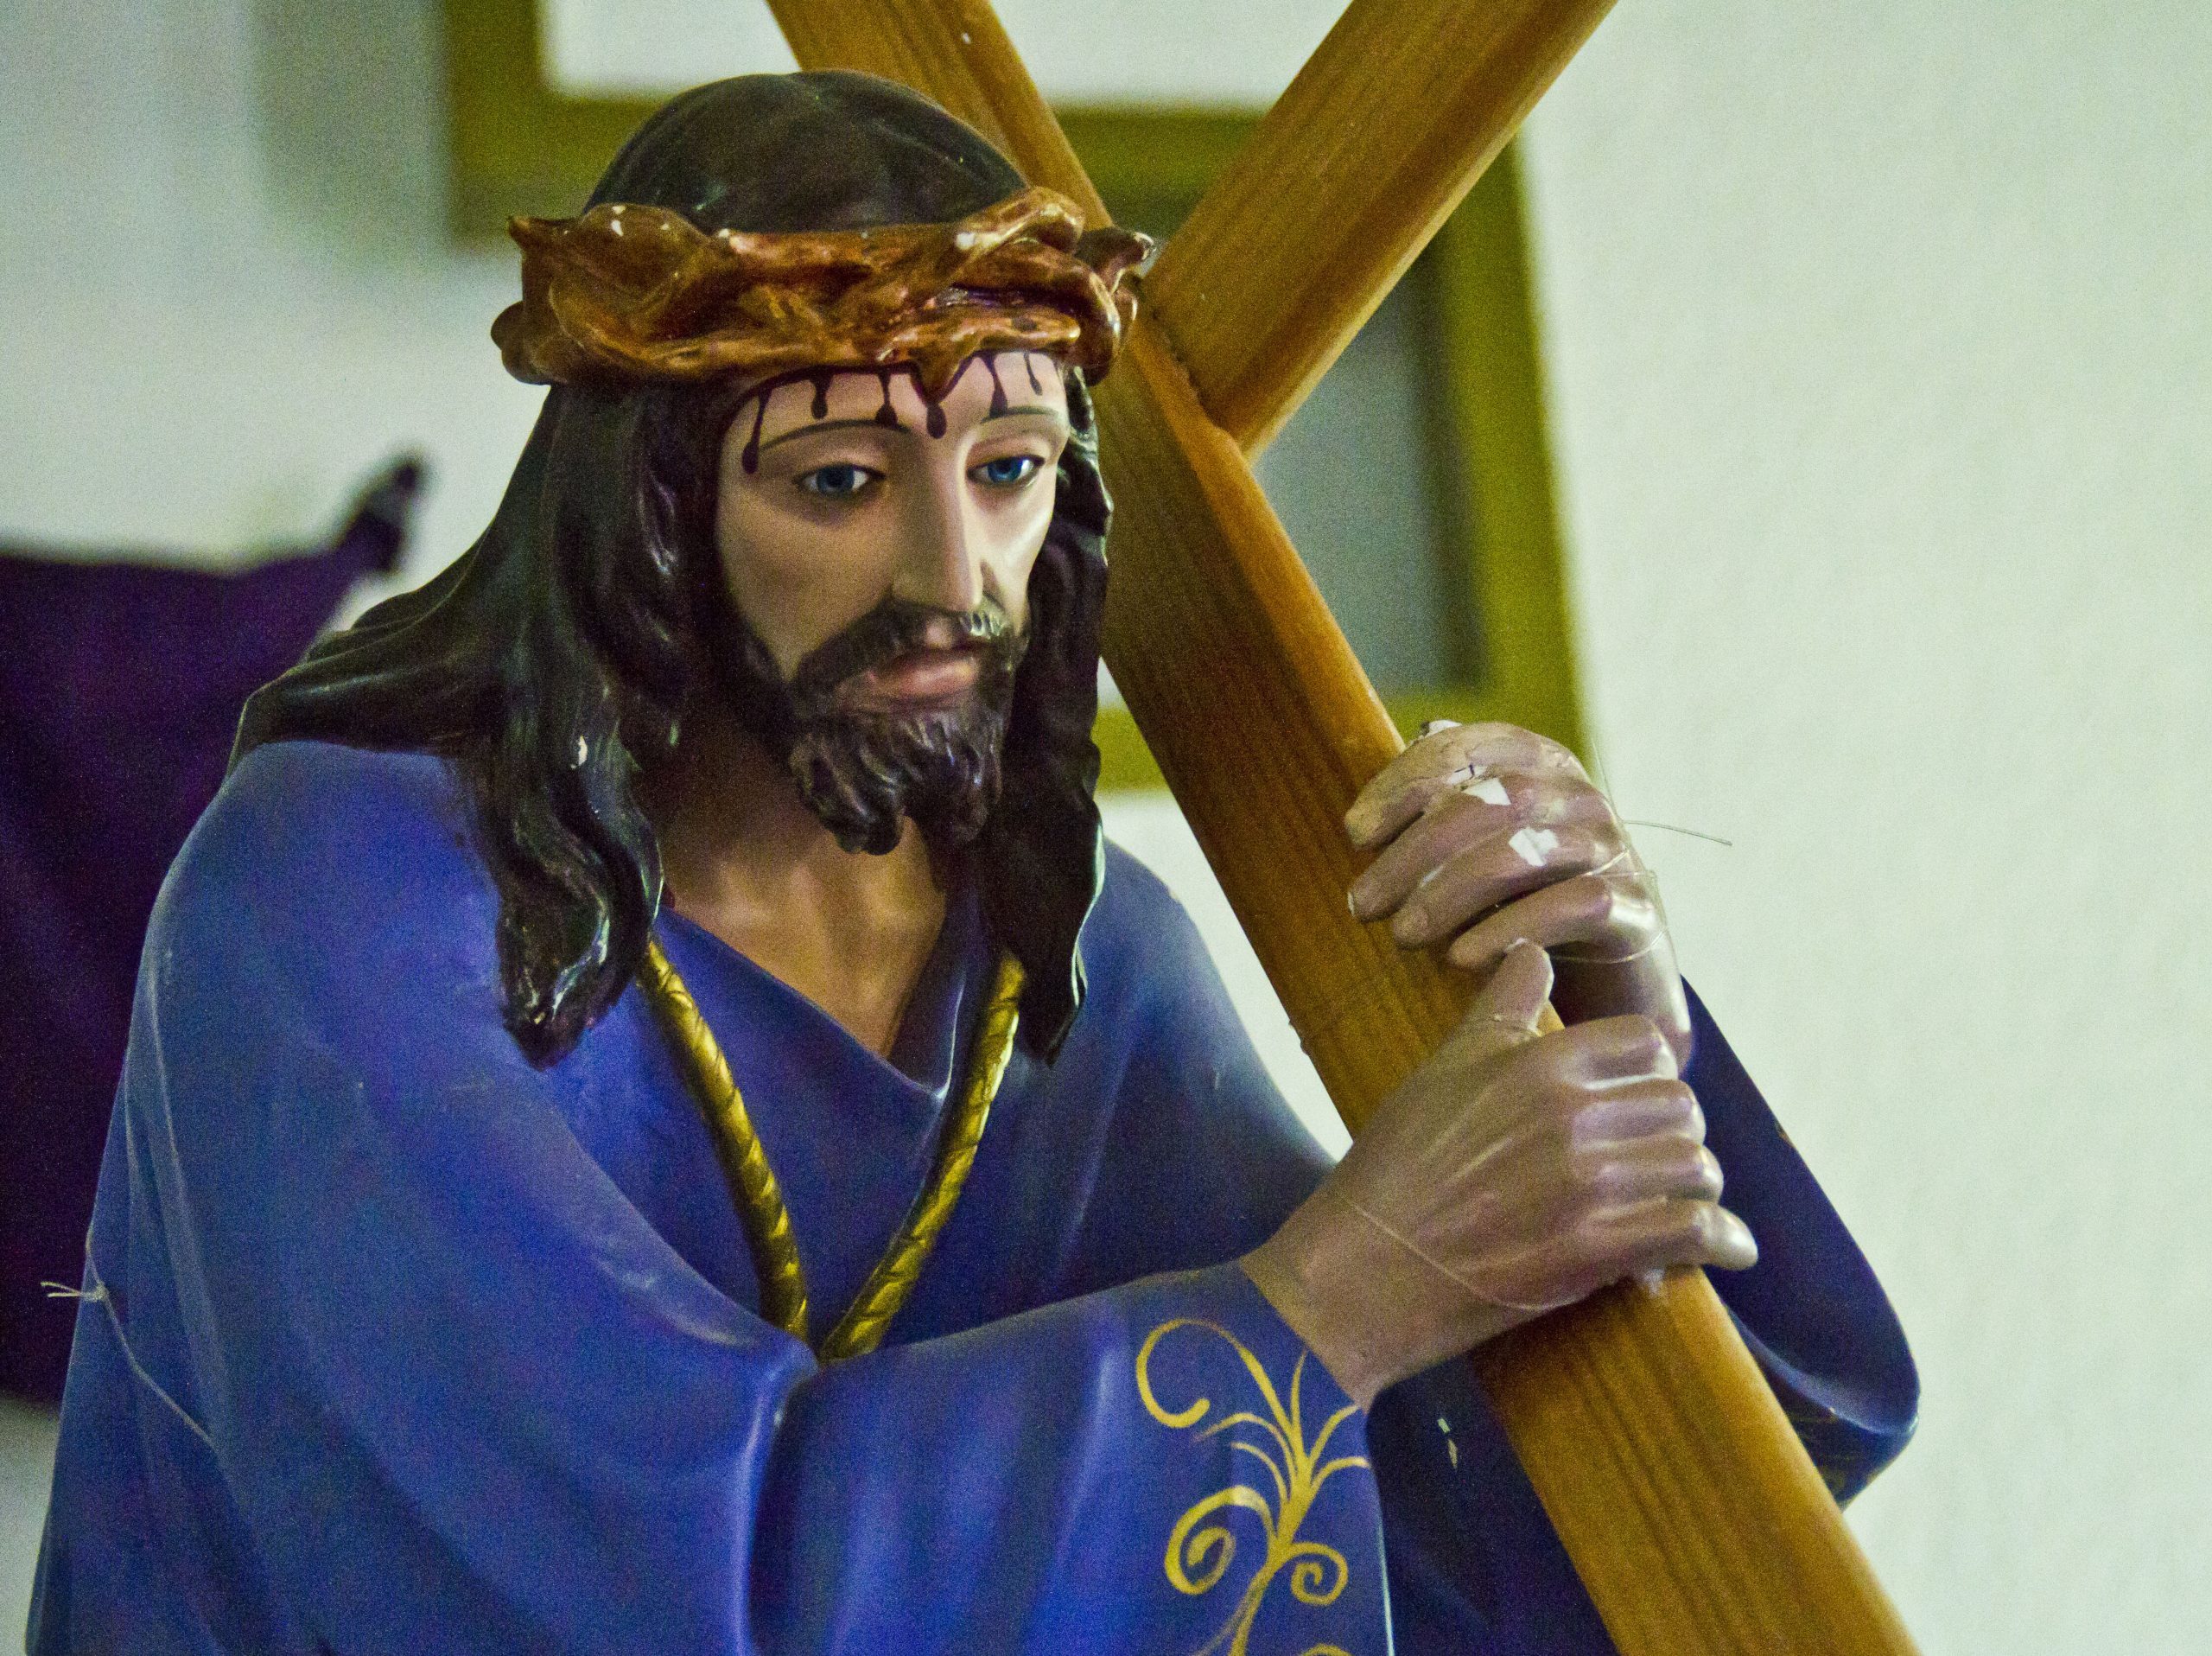 Procesión del nazareno: Feligreses rememoran la pasión de Cristo